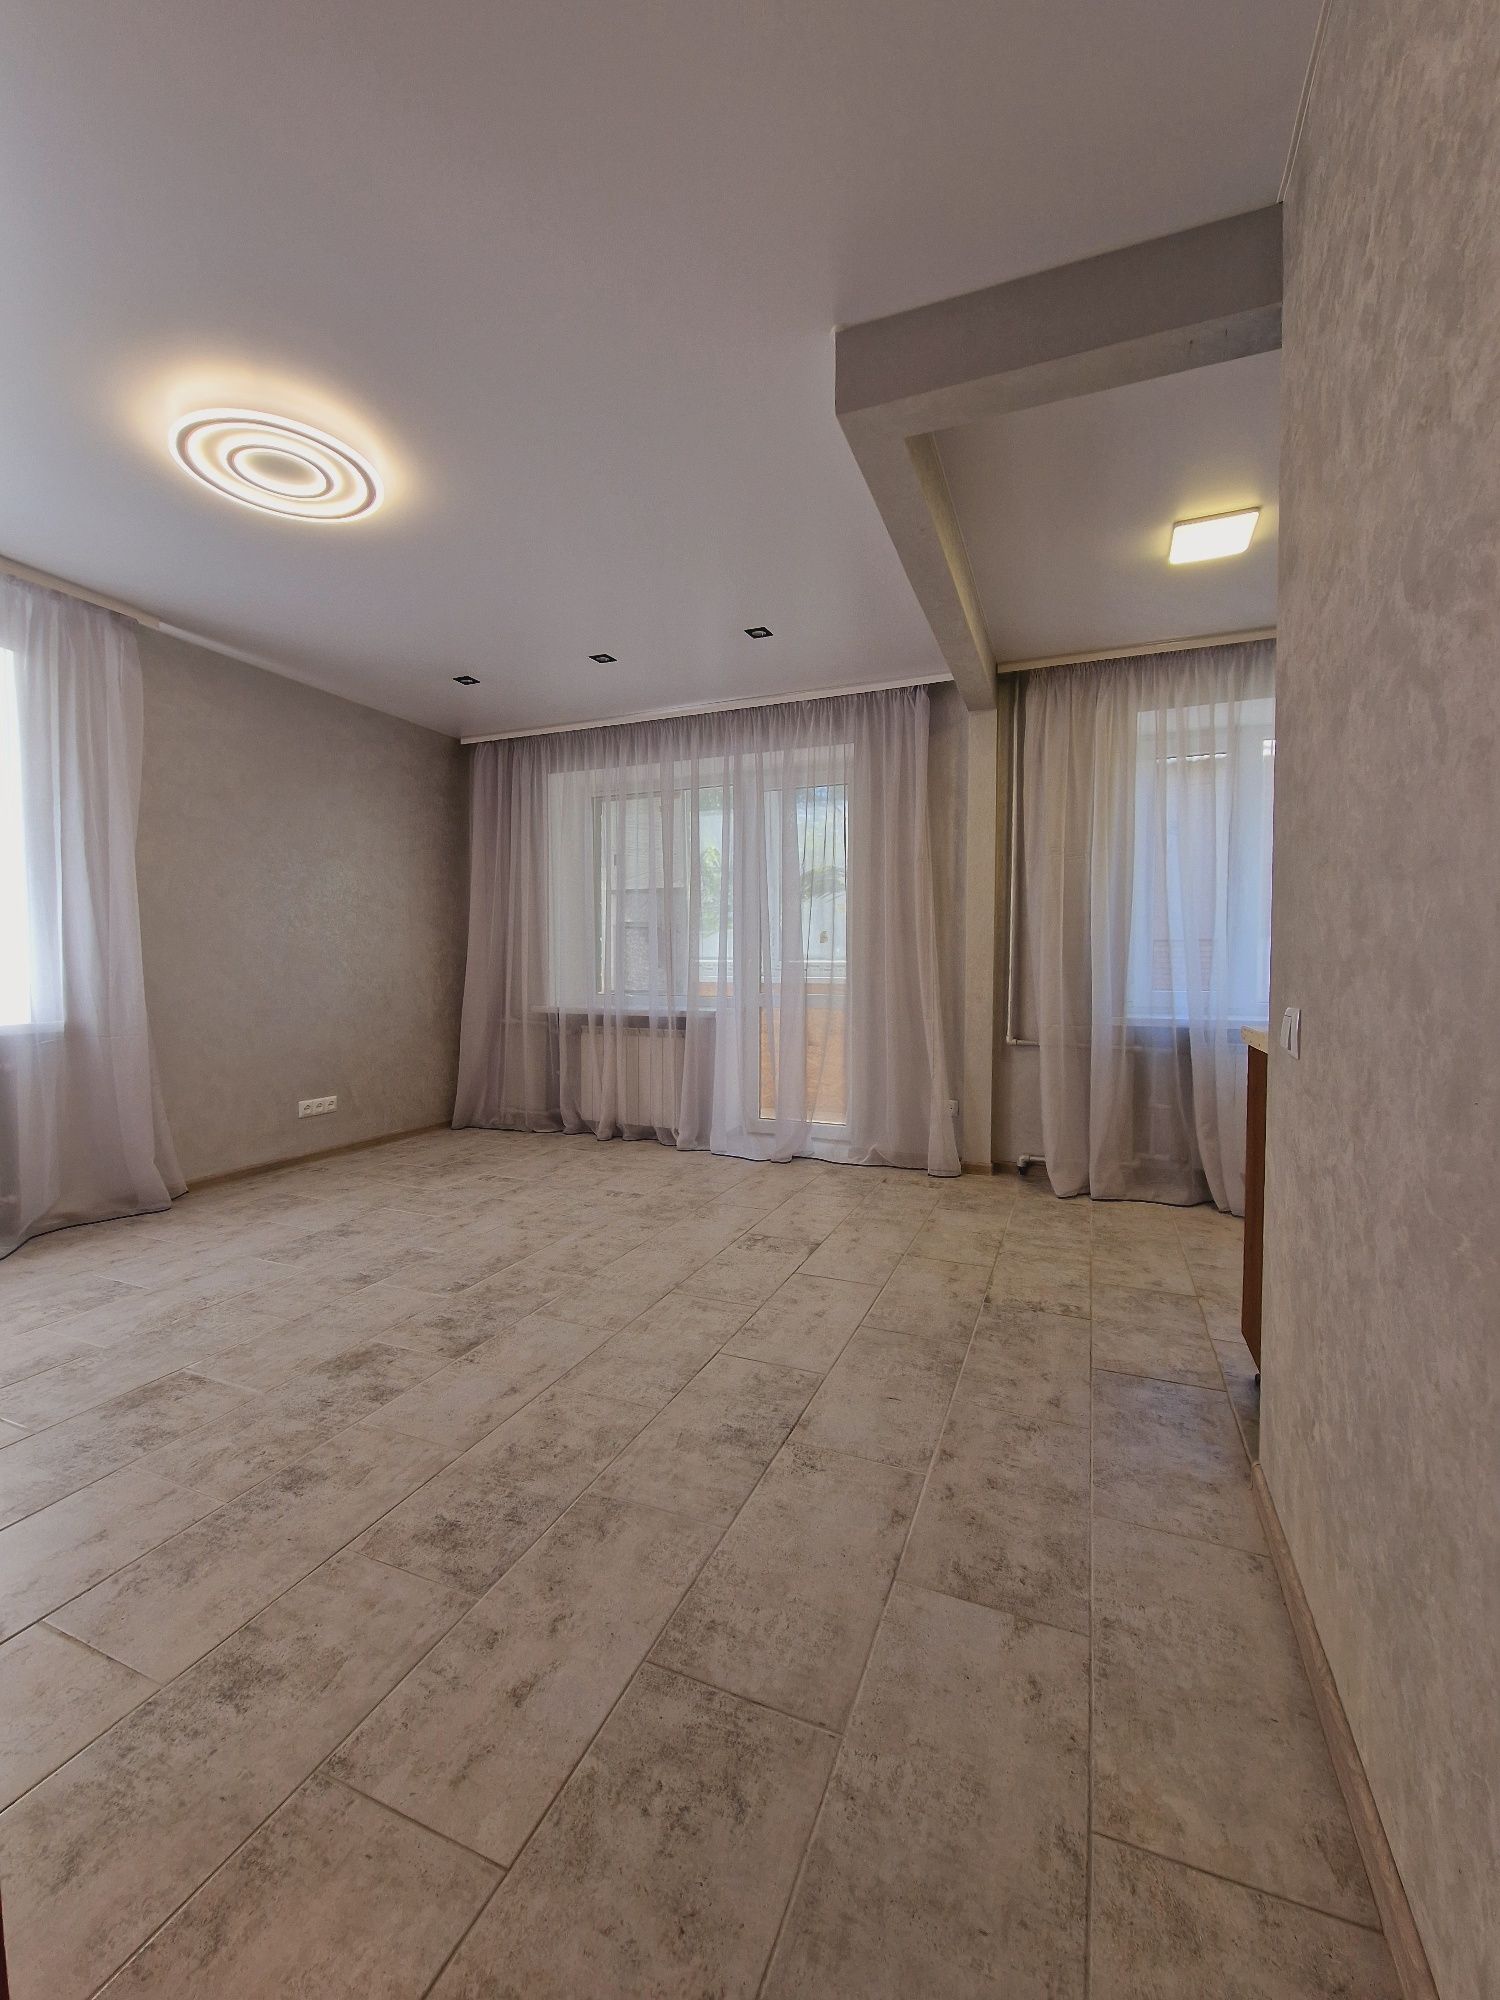 Продам 1 комнатную квартиру с капитальным ремонтом на Кирова 72.